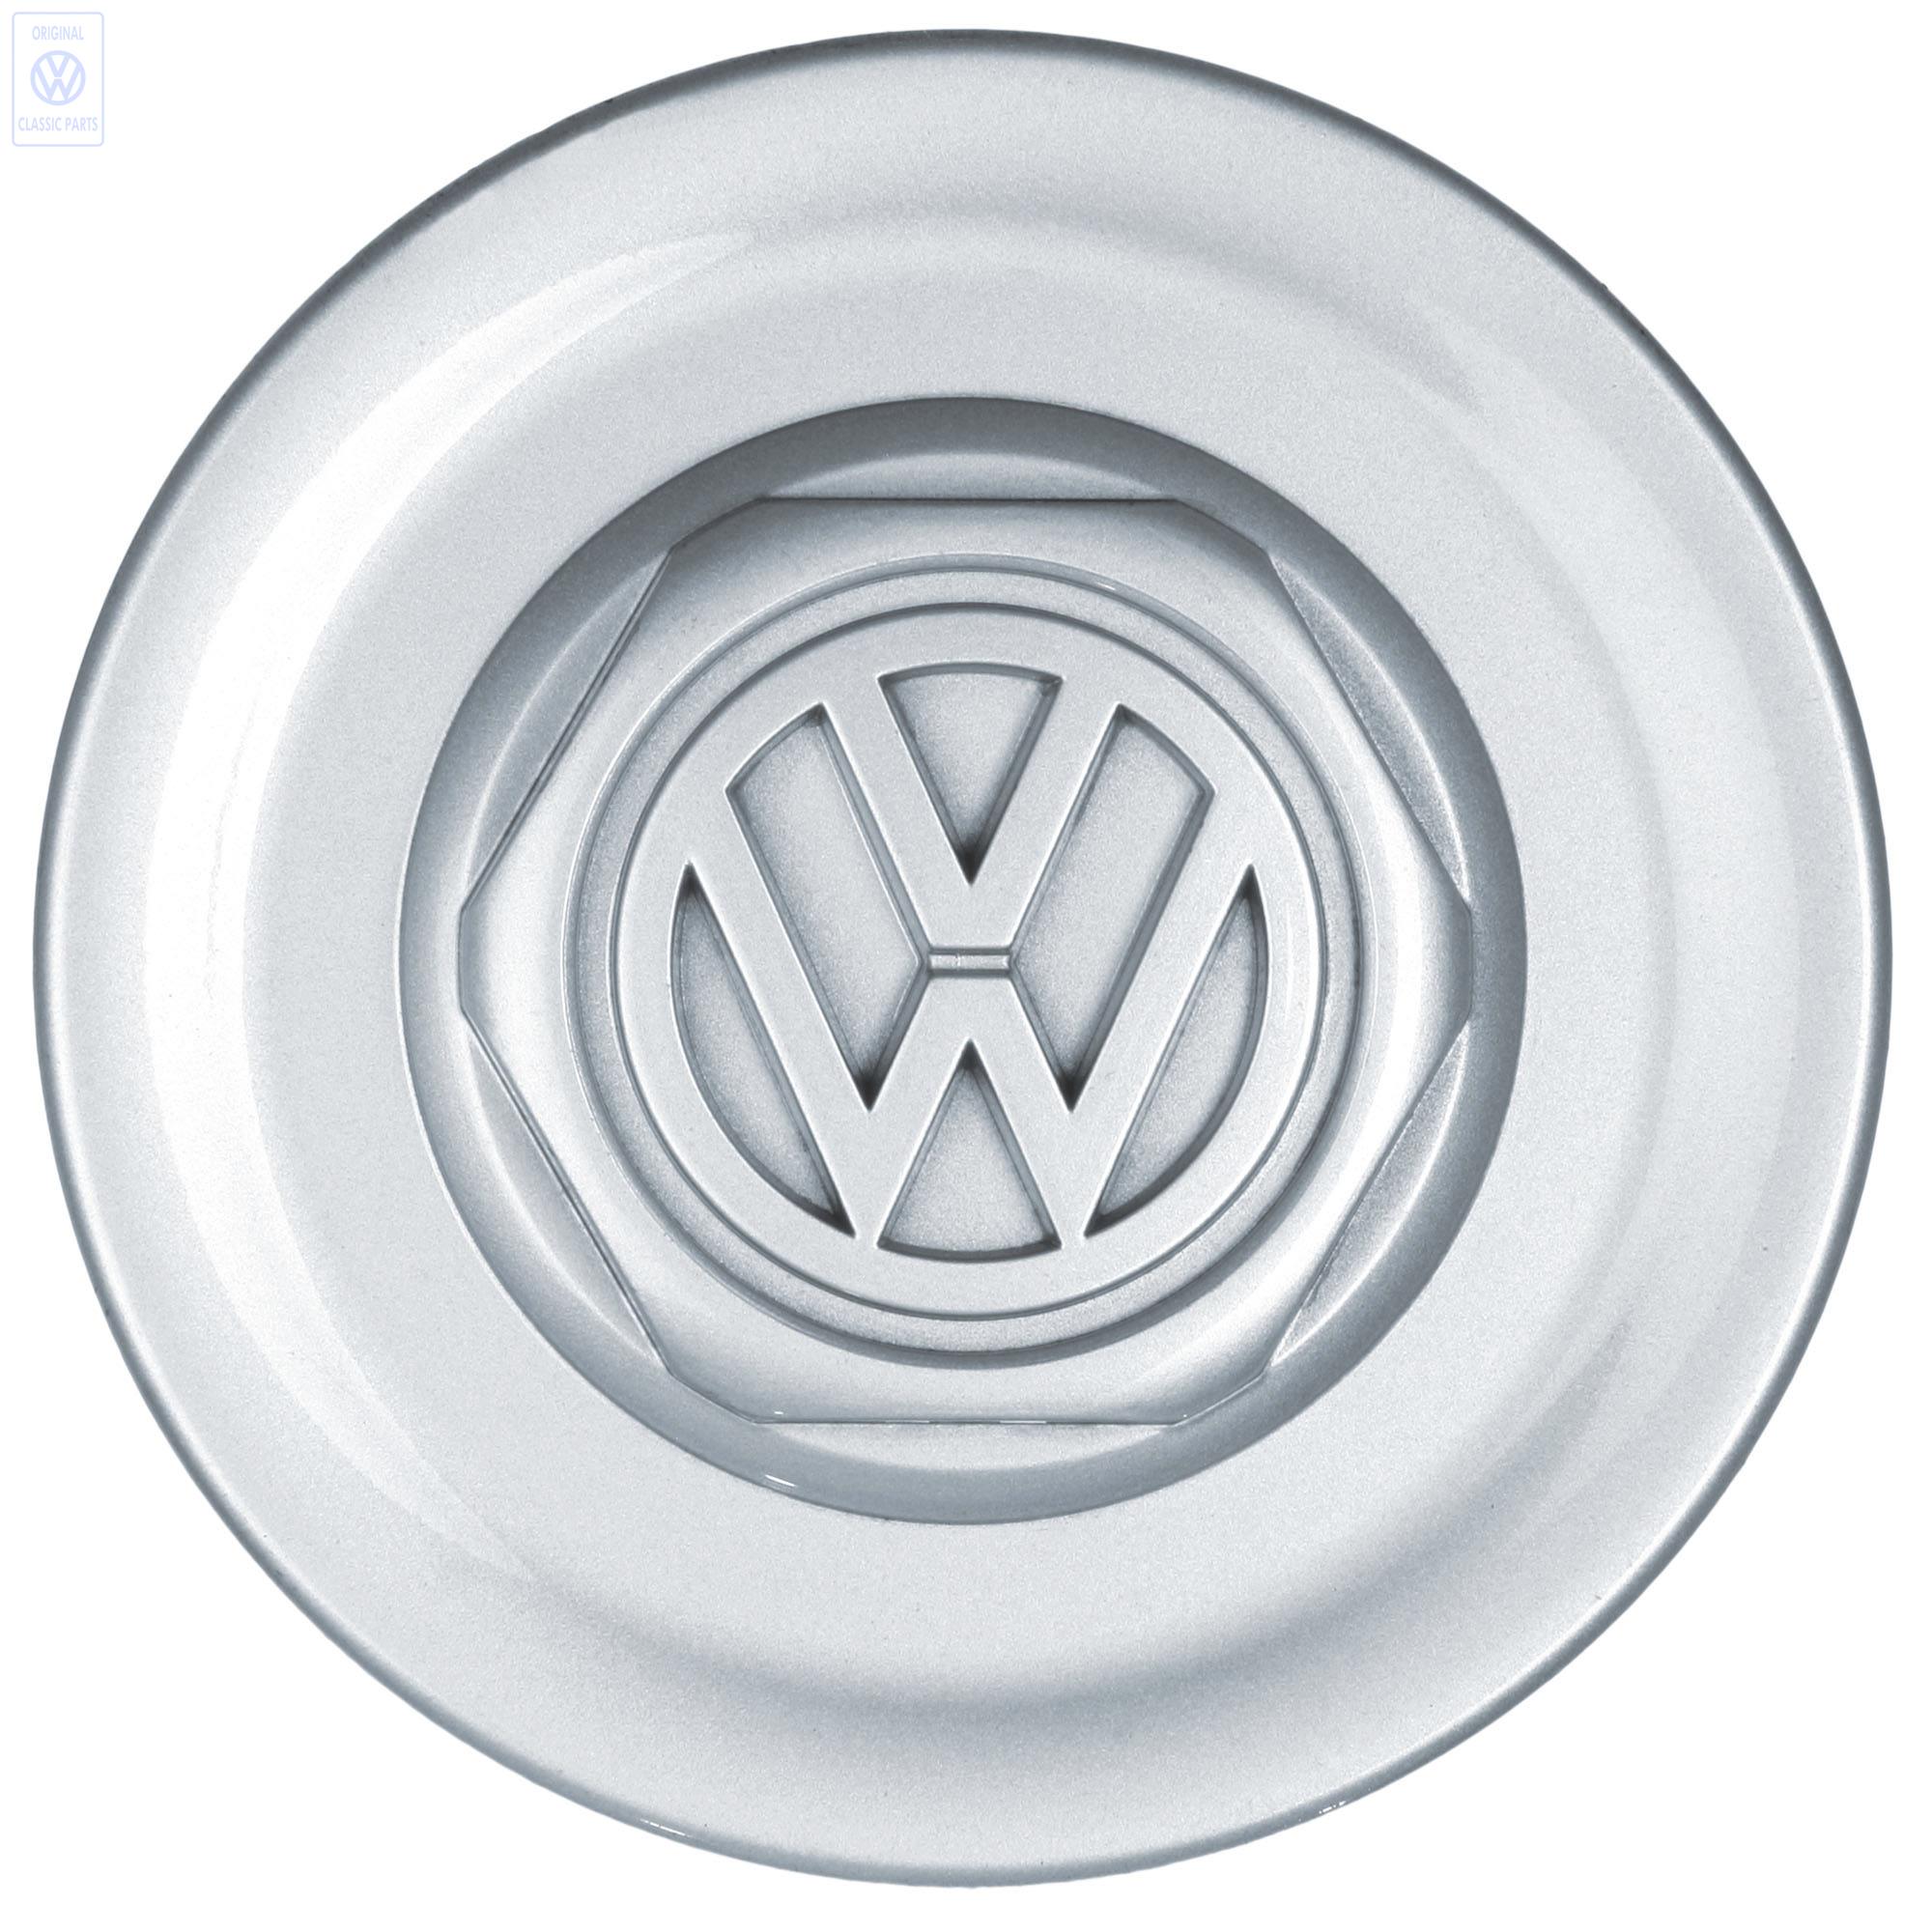 Wheel cap for VW Golf Mk3